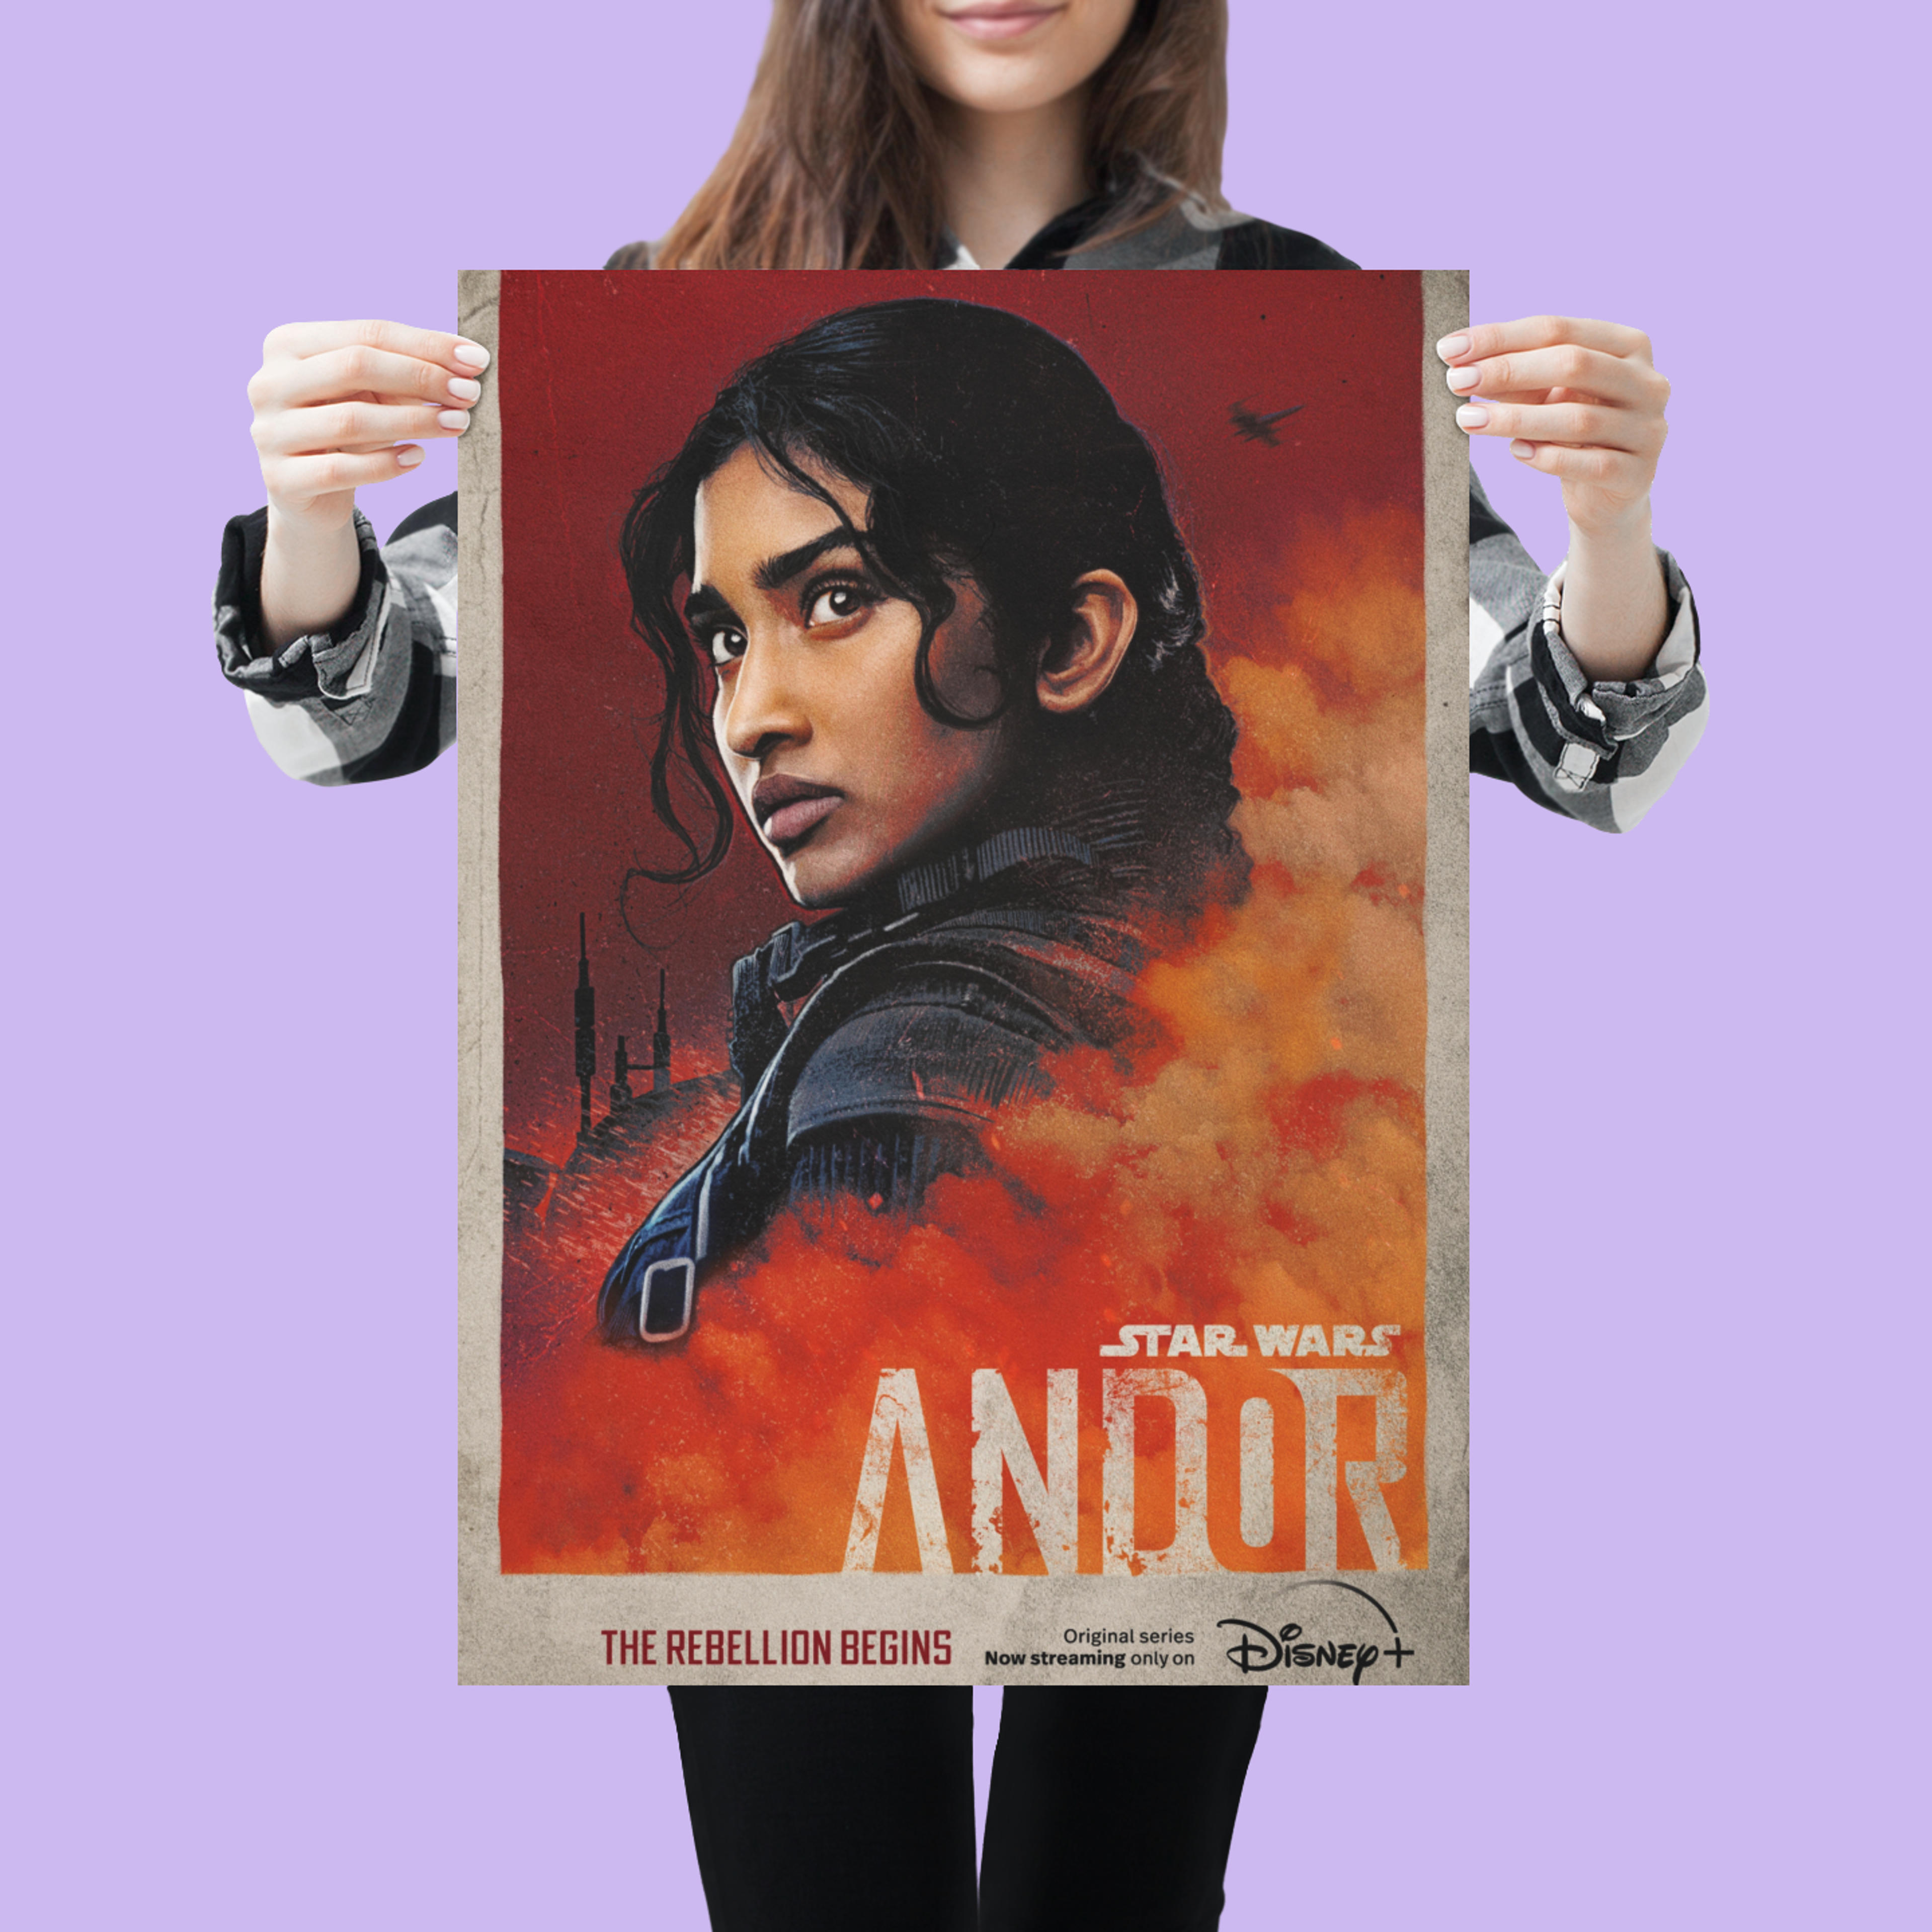 Star Wars Andor (Varada Sethu, Cinta Kaz) TV Show Poster - Lost Posters